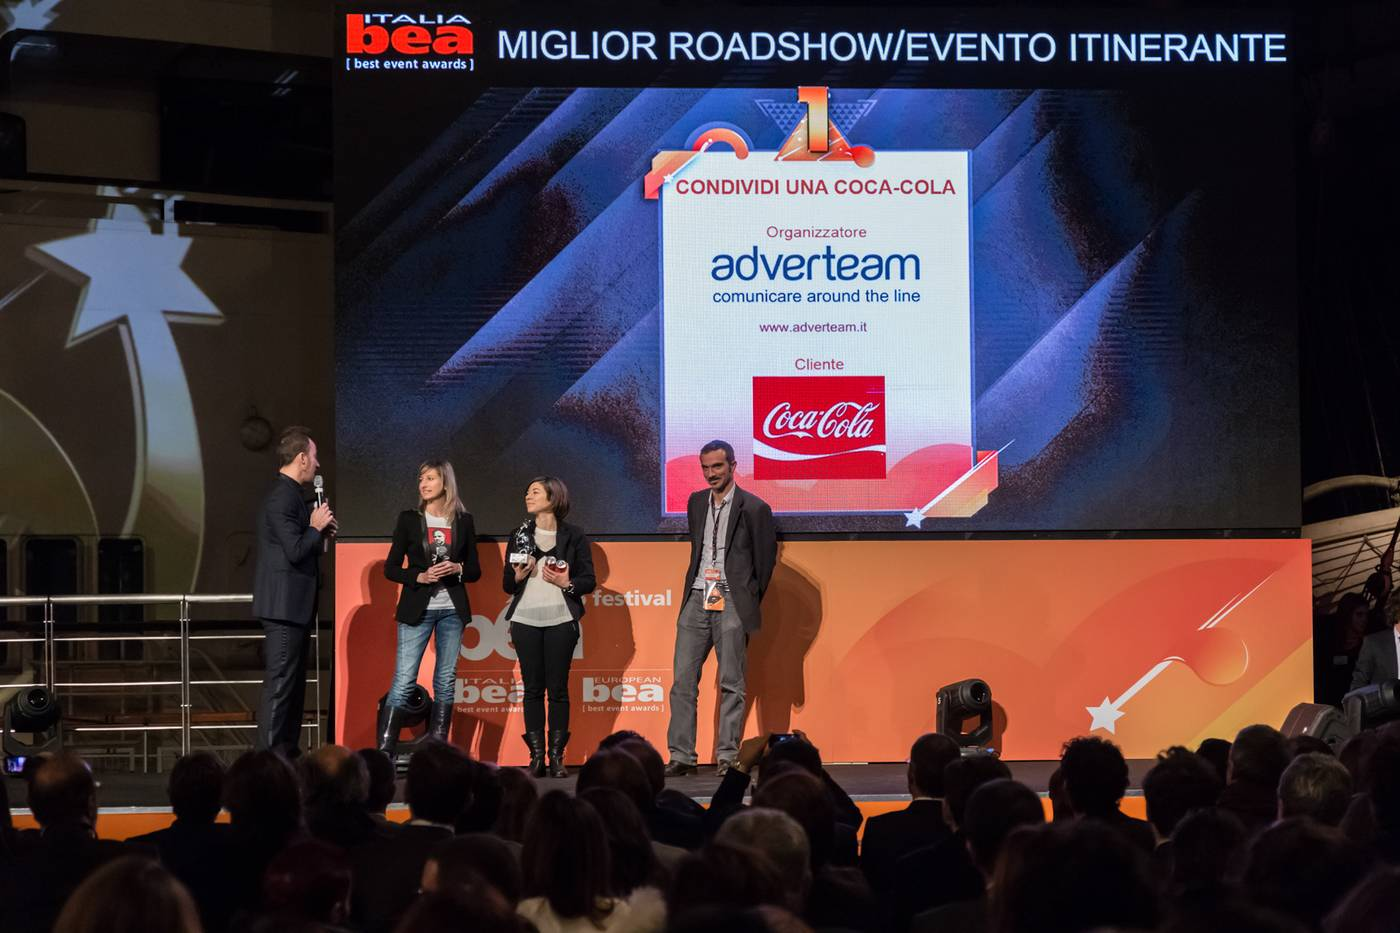 BEA 10° edizione: vinciamo 3 primi premi con il progetto “Condividi una Coca-Cola”